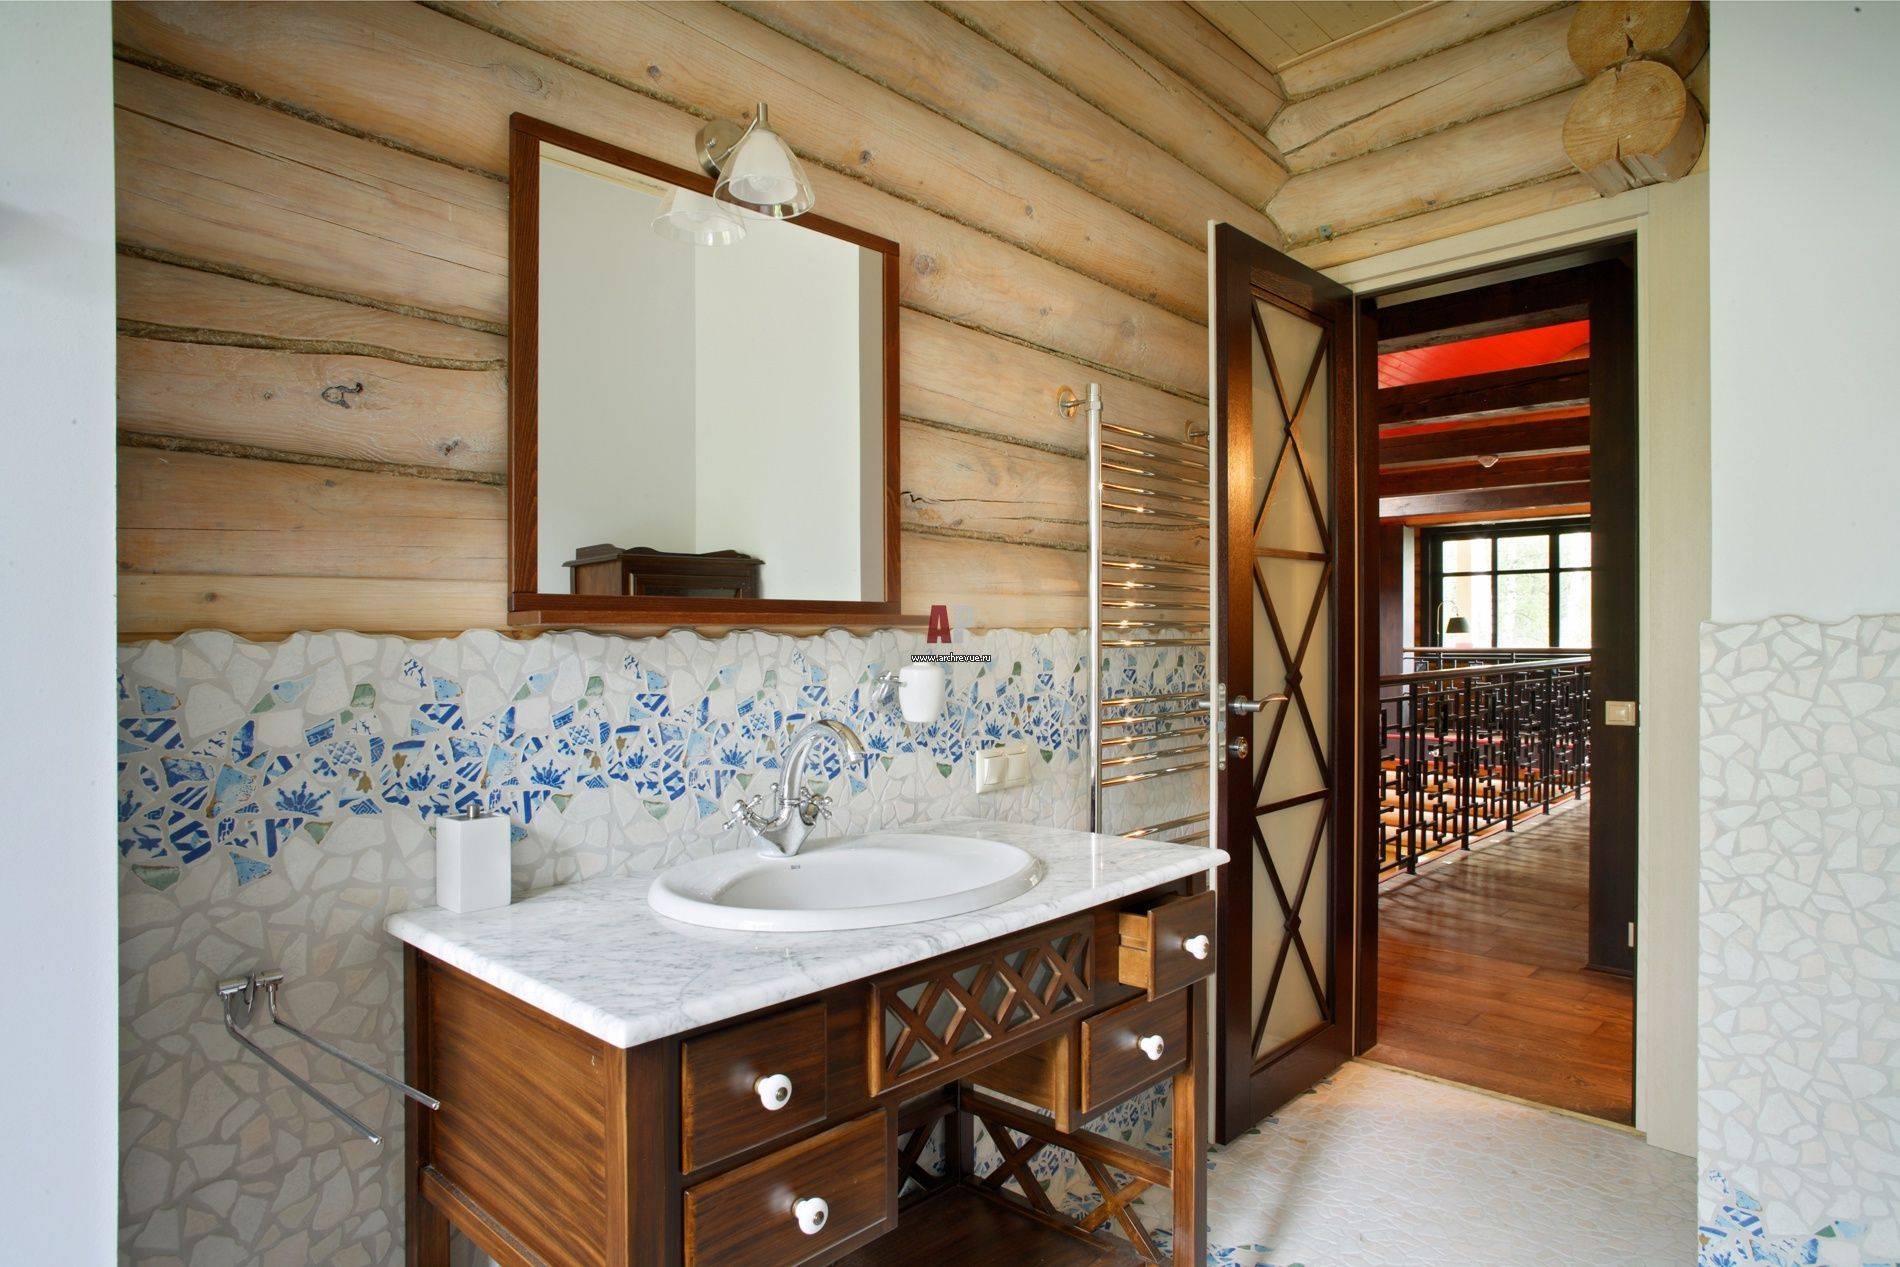 Ванная комната в деревянном доме: пол, стены, потолок + фото